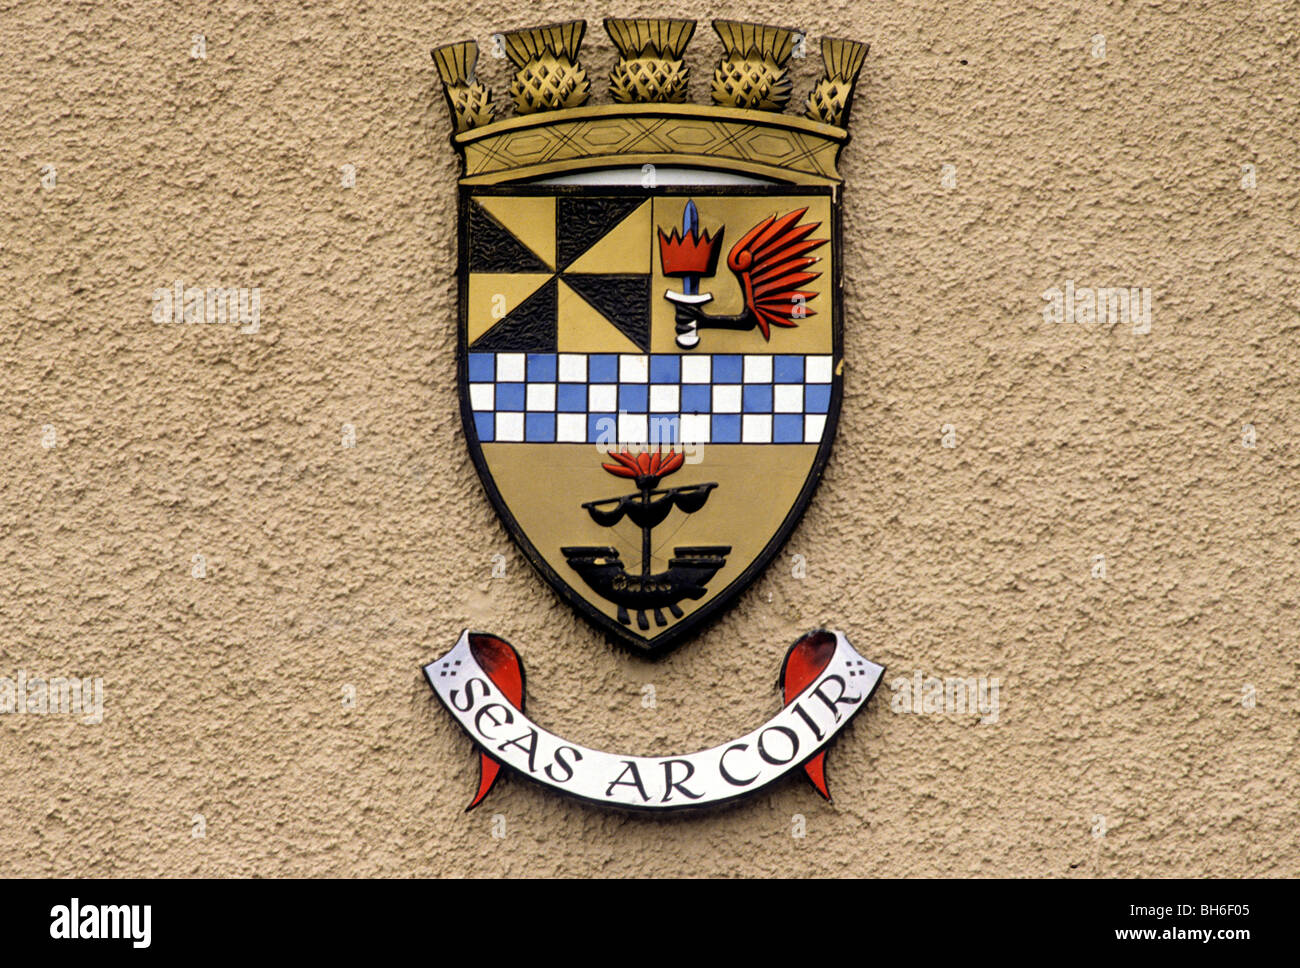 Oban, Scotland Ville blason héraldique devise héraldique bouclier de l'appareil inscription UK blasons écossais périphériques Banque D'Images